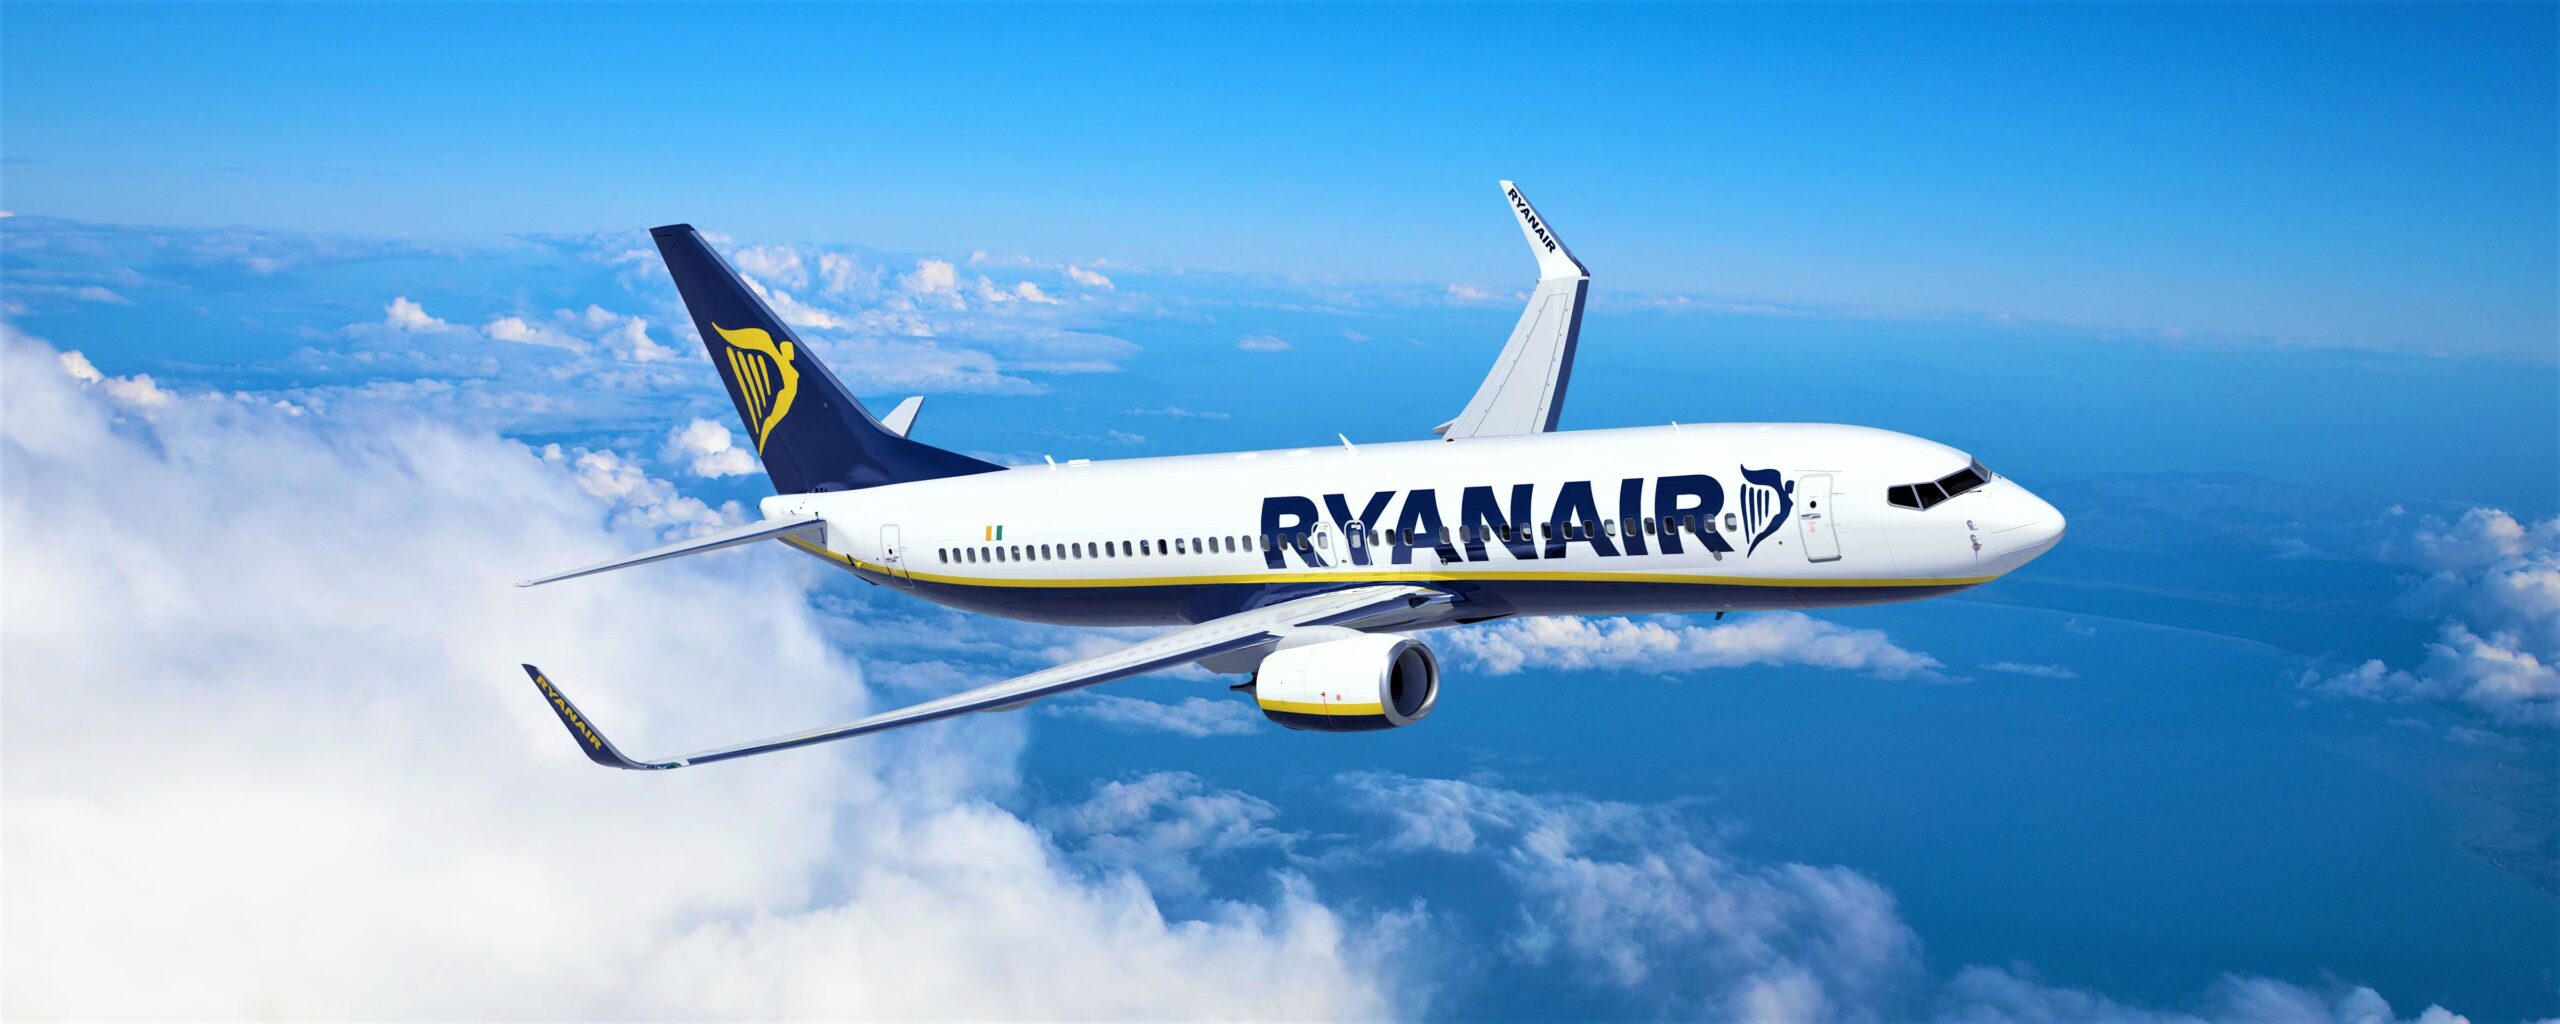 Ryanair amplia la presenza a Trapani con 6 nuove rotte per l'estate 2021